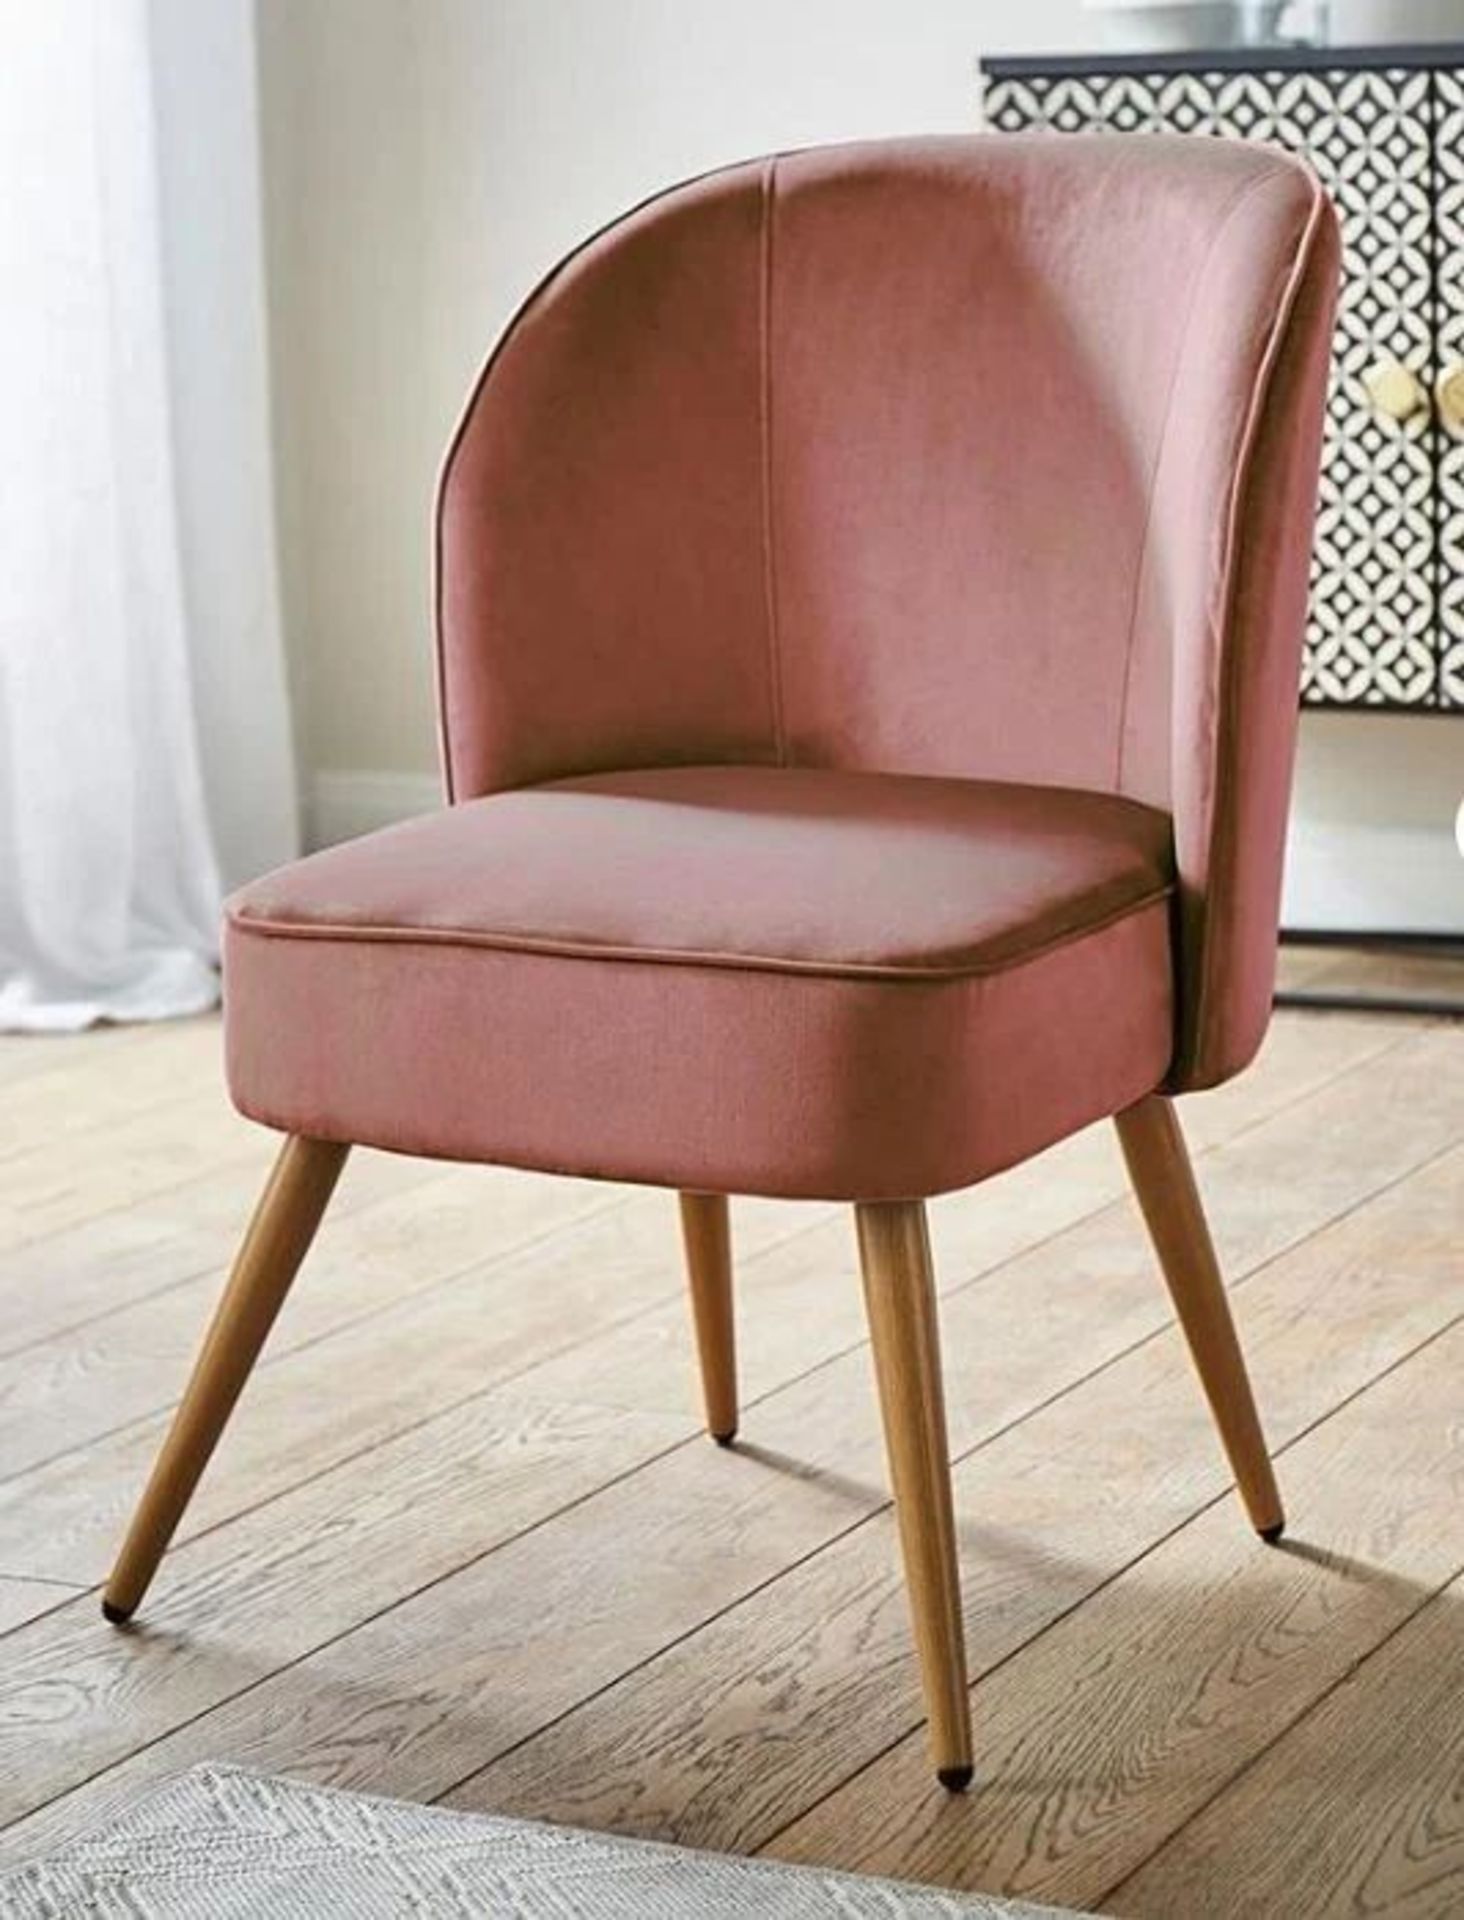 NEW & BOXED AVERY Velvet Accent Chair. DUSTY PINK. RRP £119 EACH. The velvet upholstered Avery